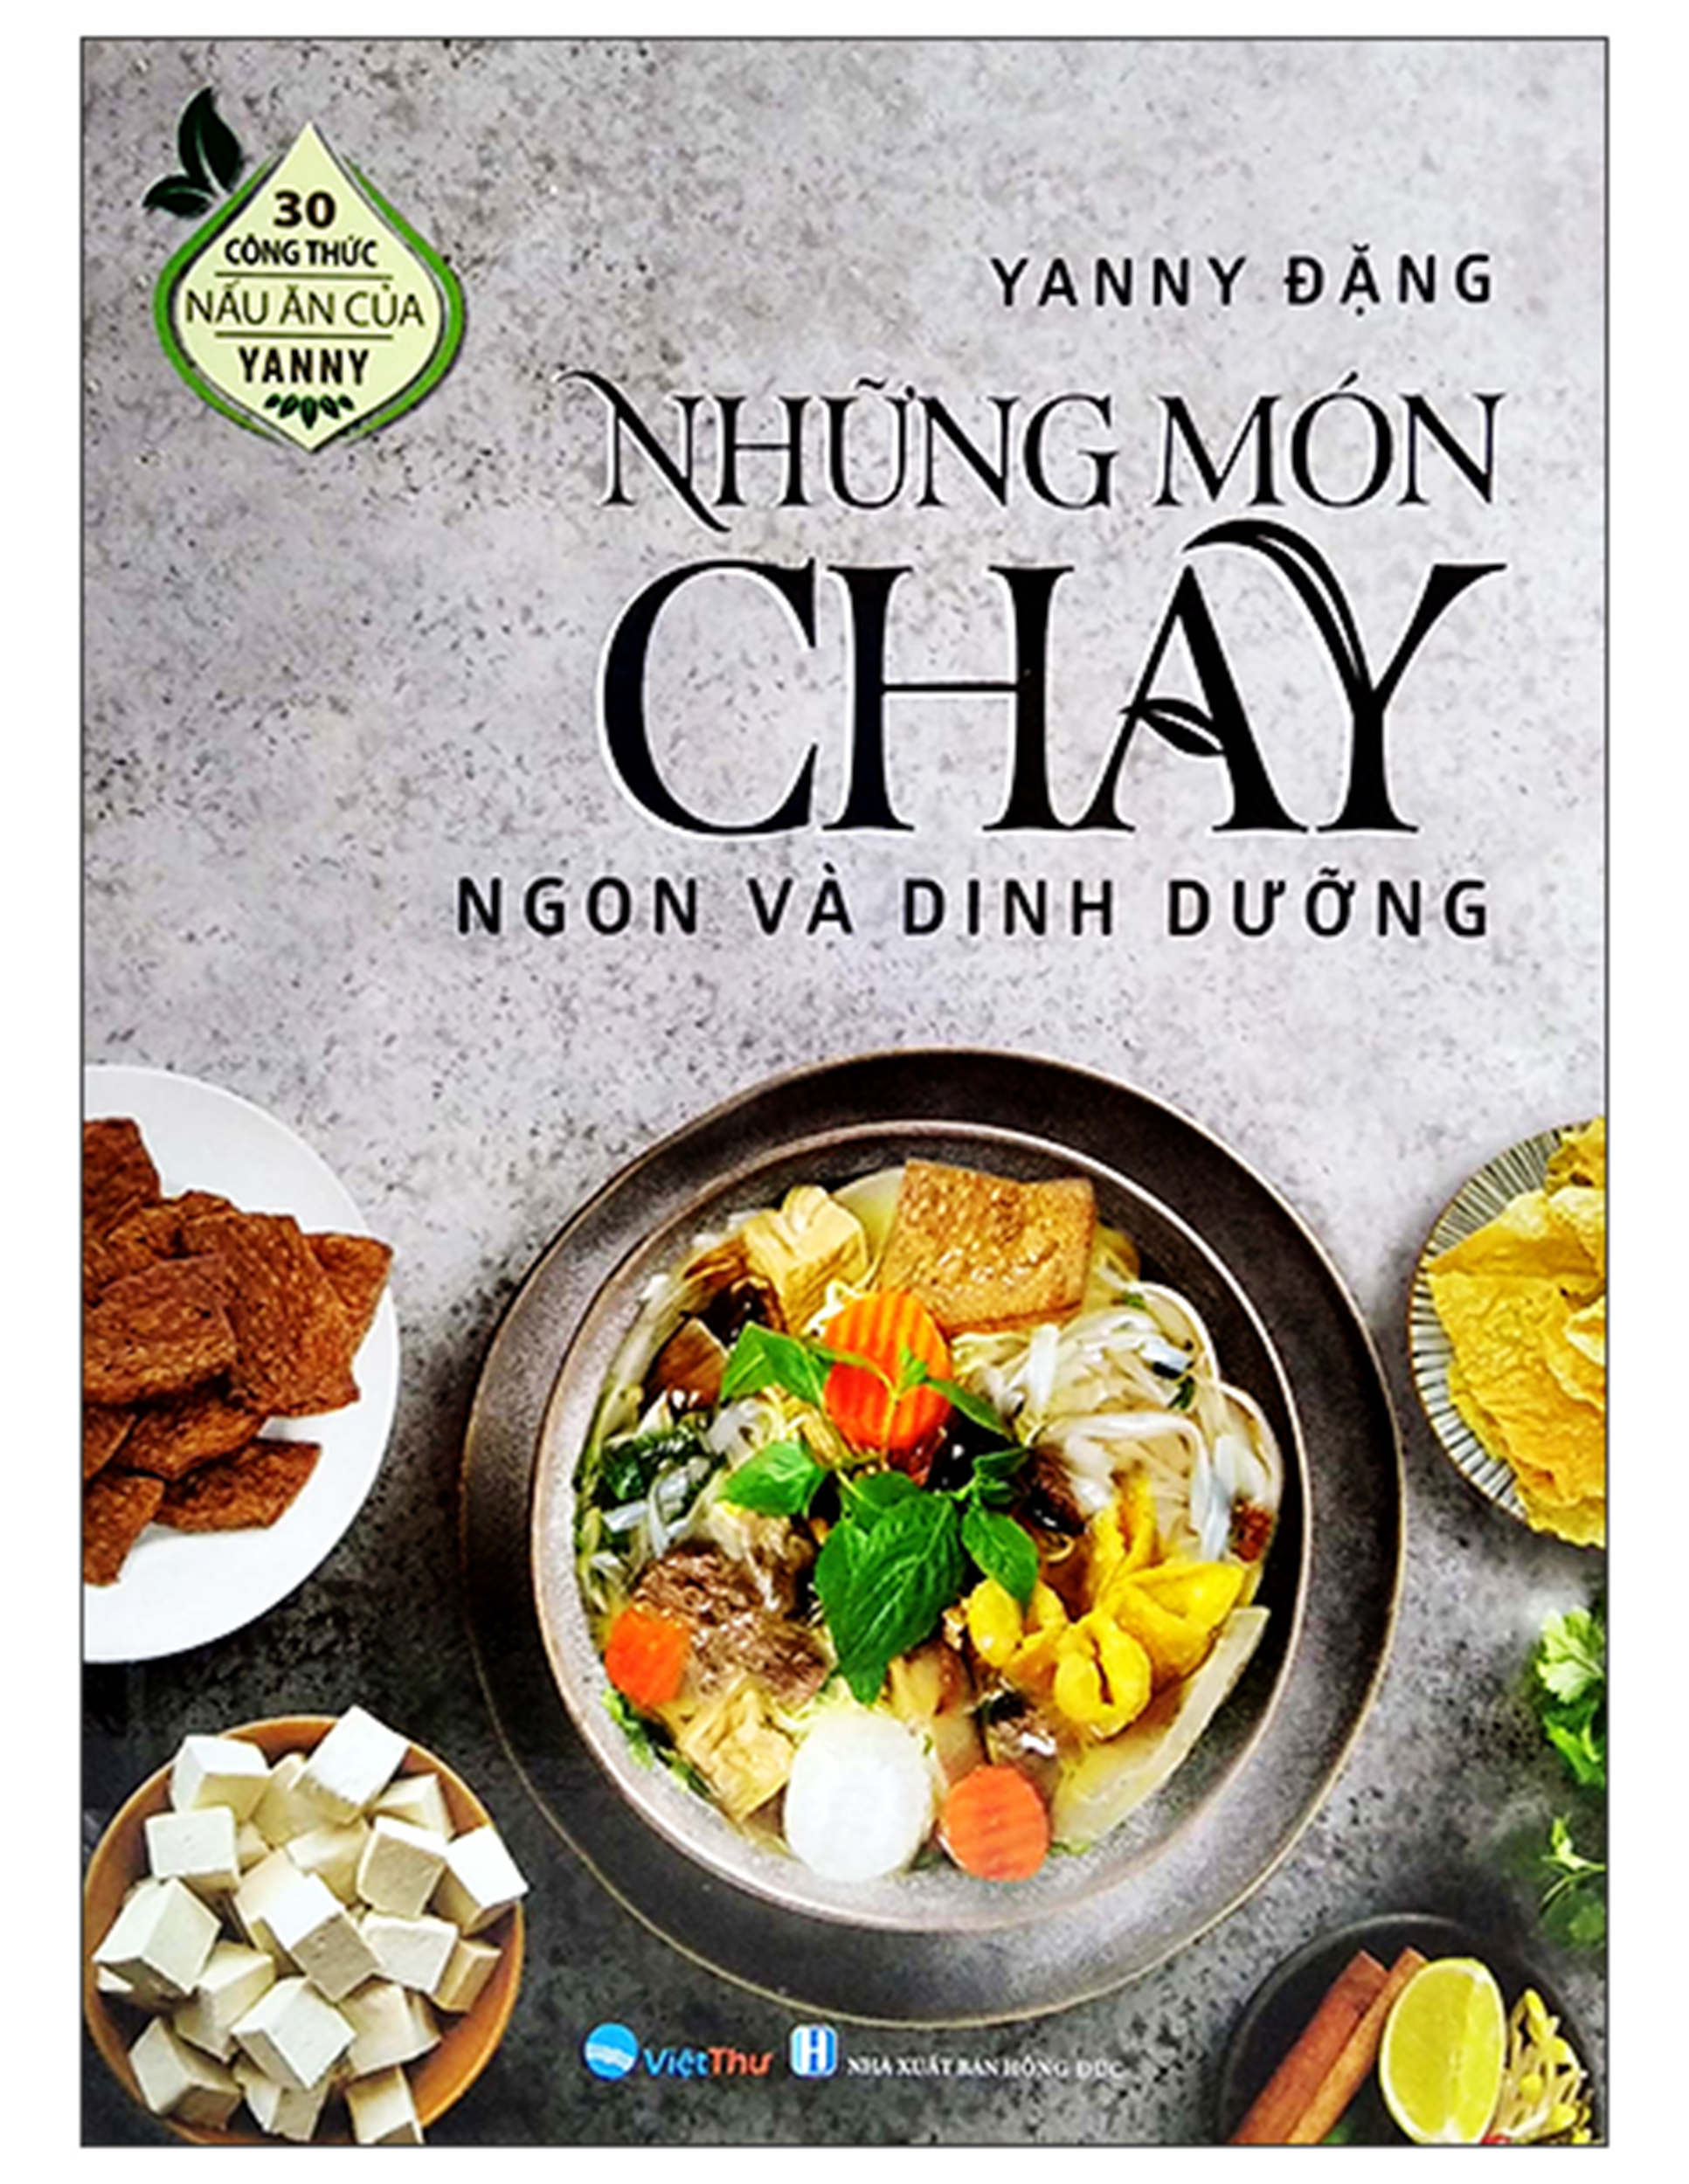 30 Công Thức Nấu Ăn Của Yanny - Những Món Chay Ngon Và Dinh Dưỡng (2022) ebook PDF-EPUB-AWZ3-PRC-MOBI